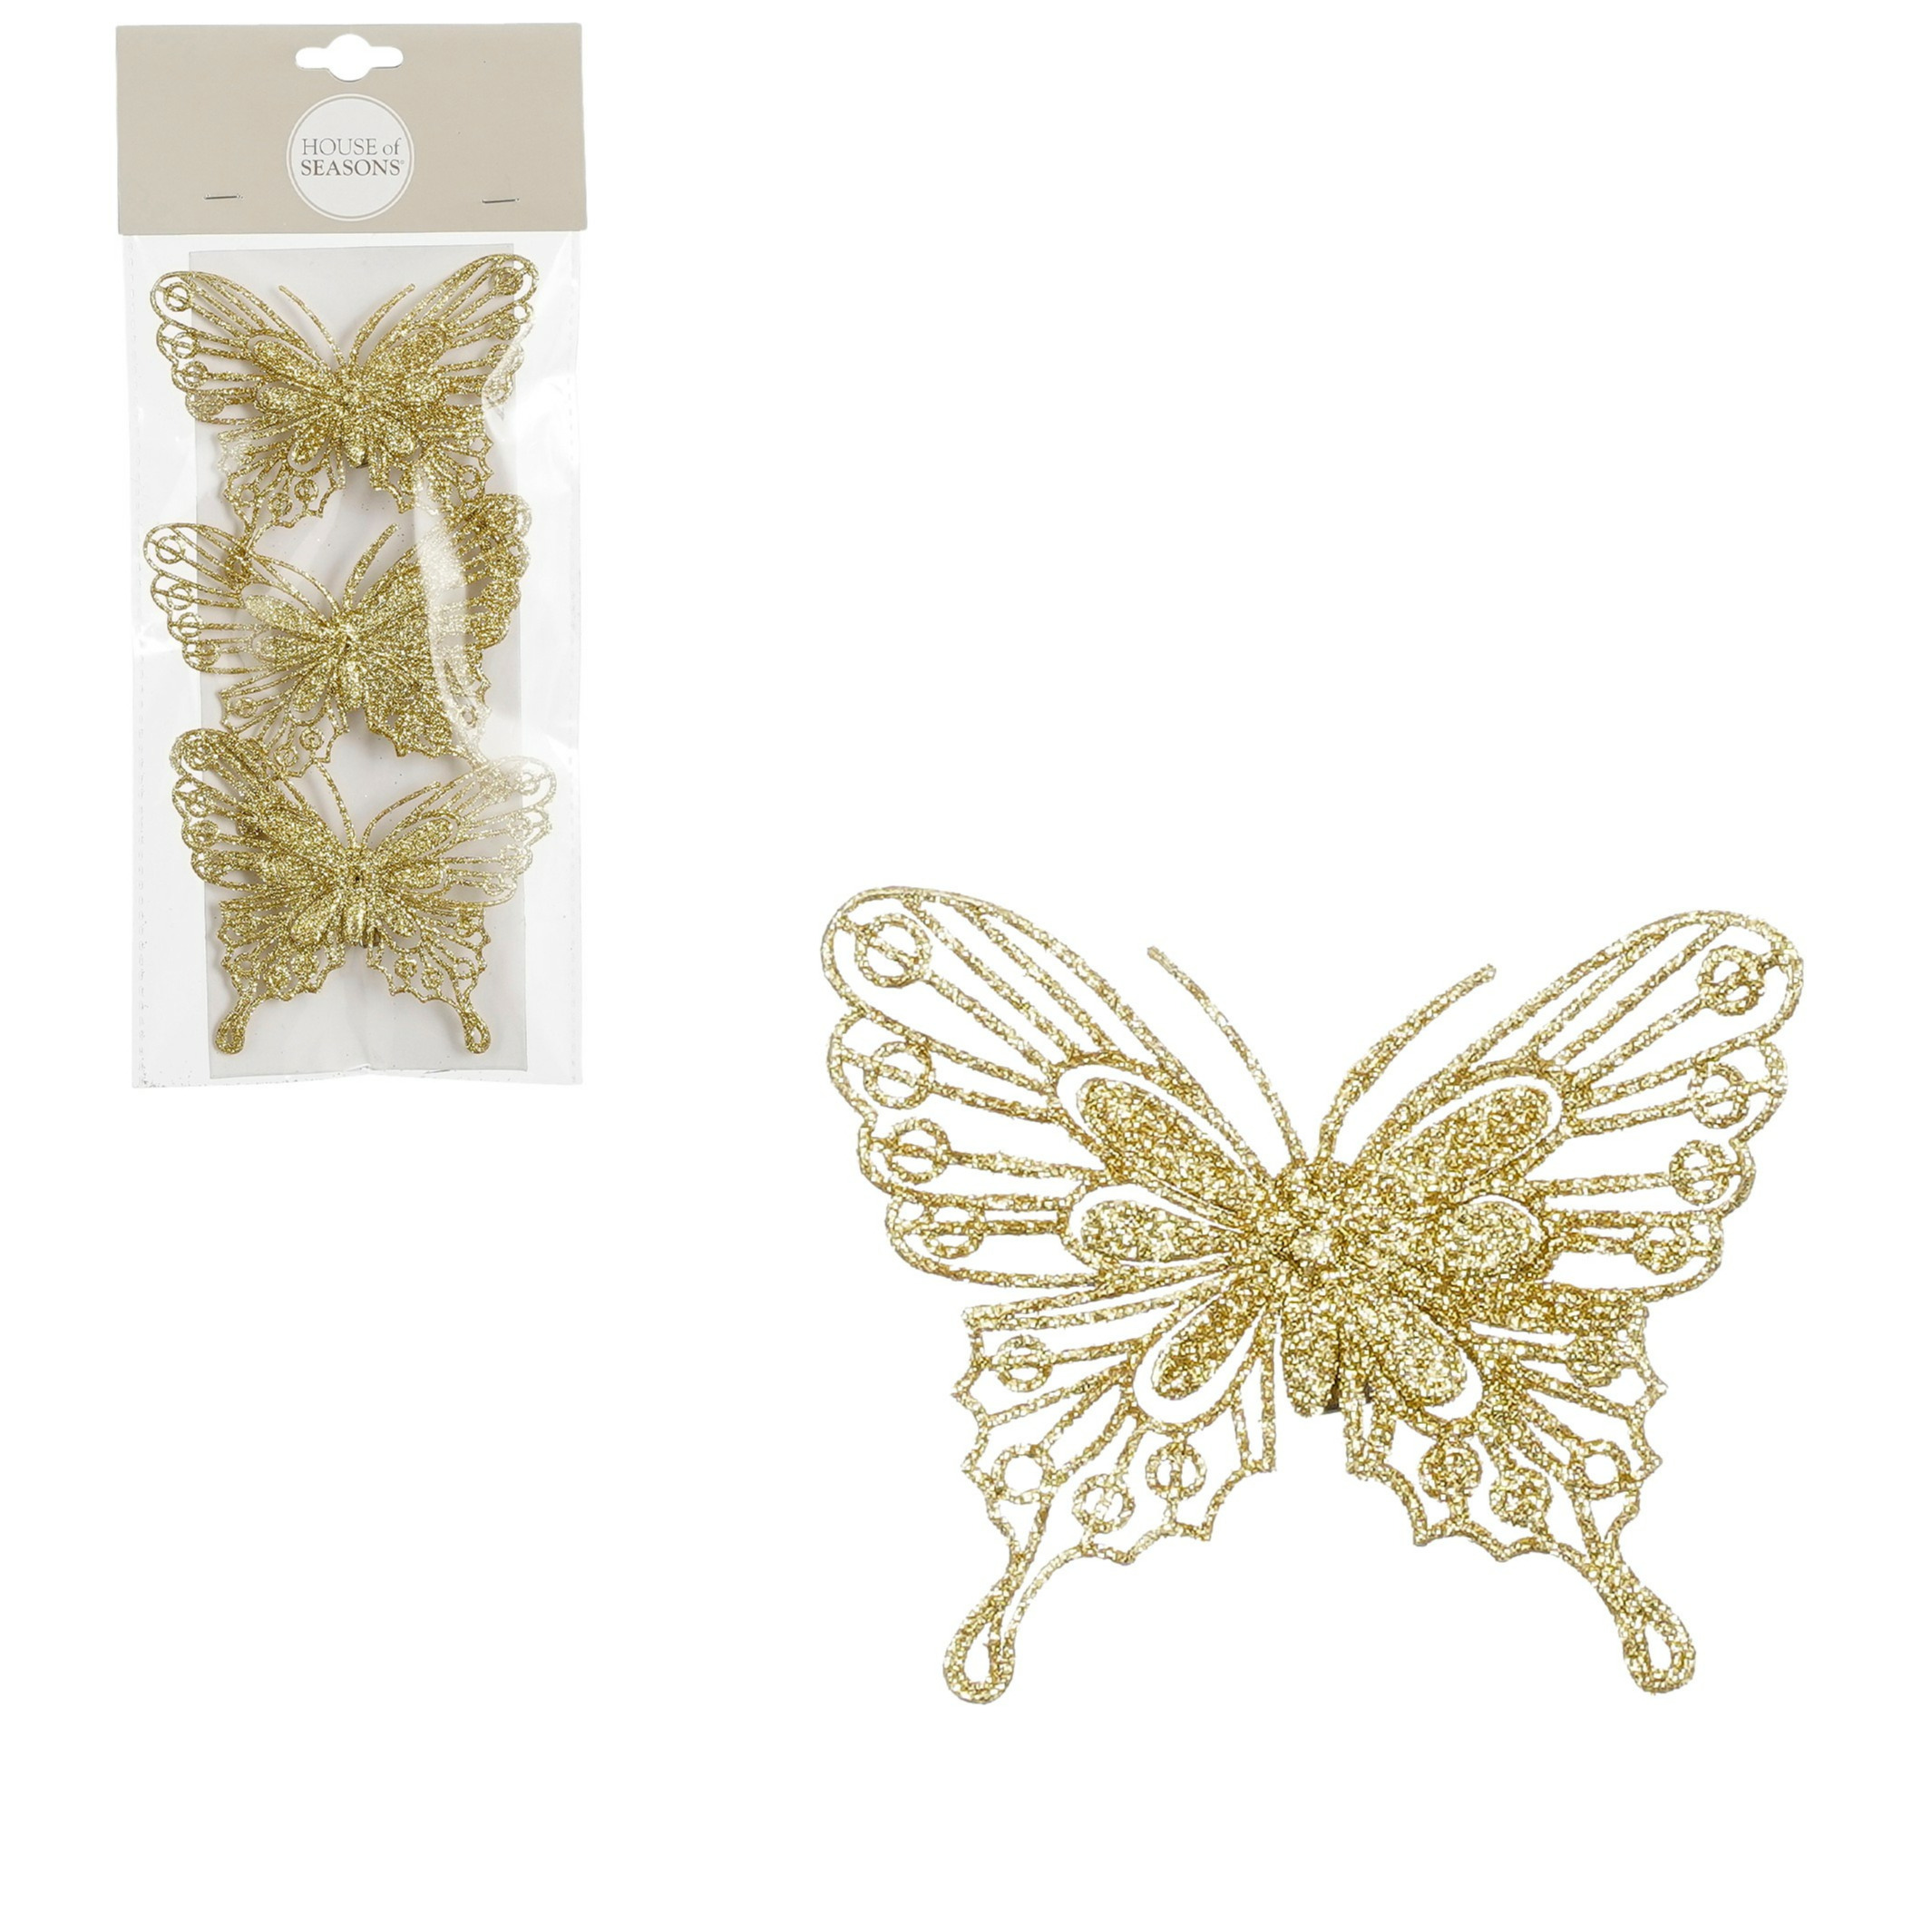 House of Seasons vlinders op clip 3x stuks goud glitter 10 cm